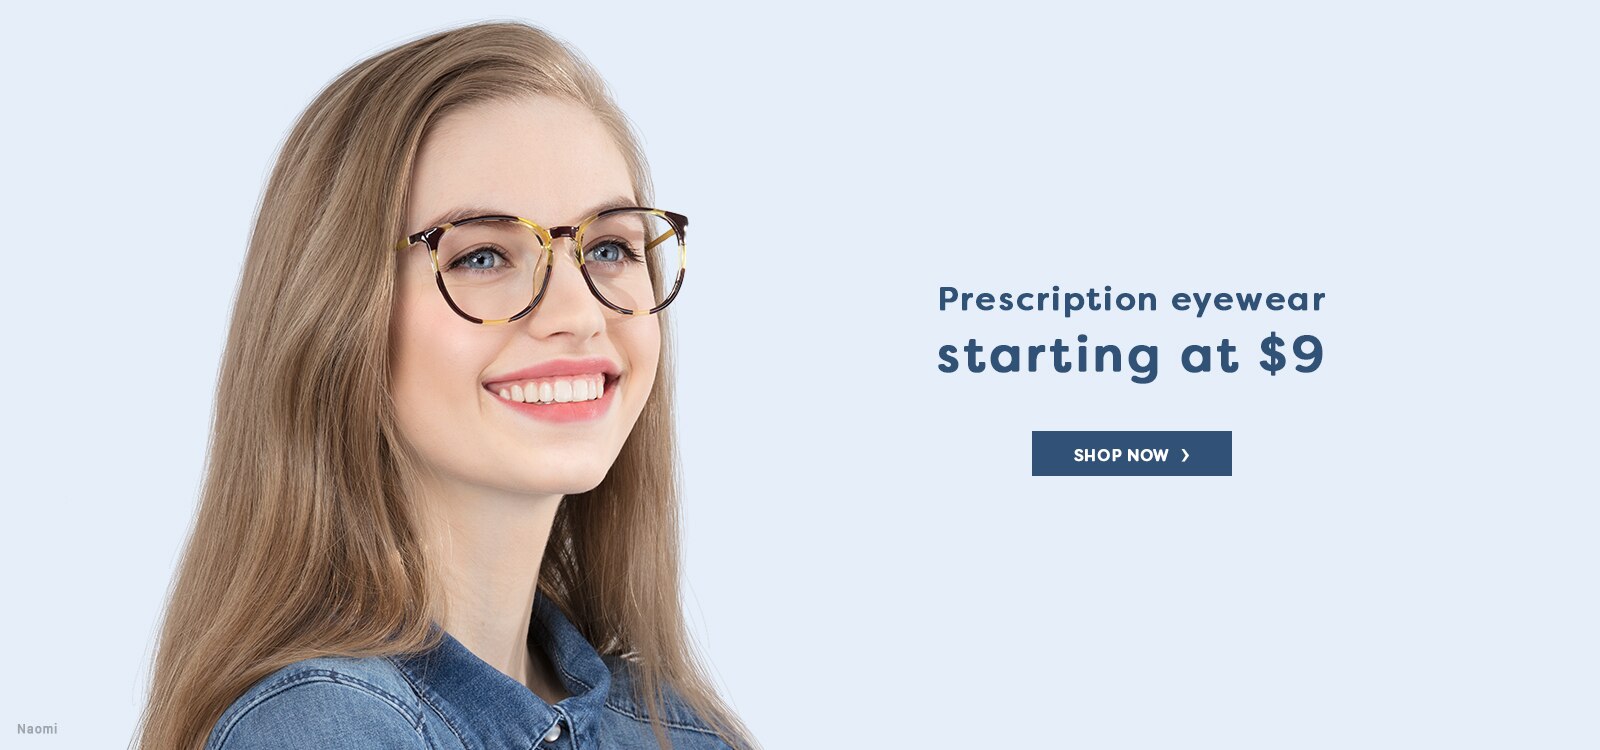 Prescription eyewear starting at $9